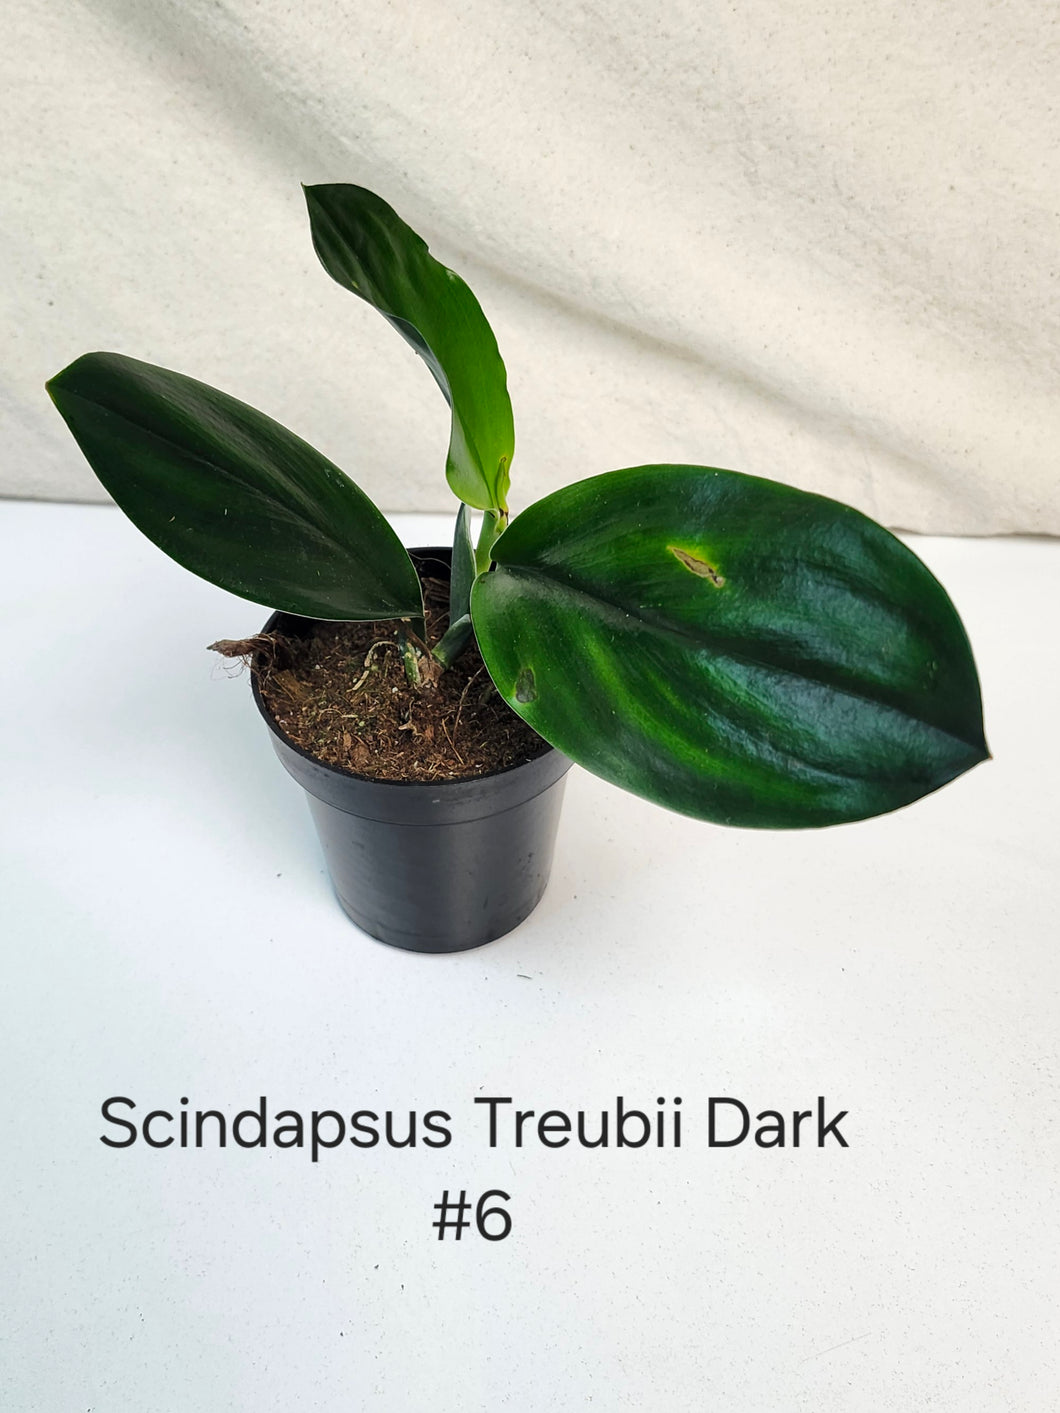 Scindapsus Treubii Dark Form #6